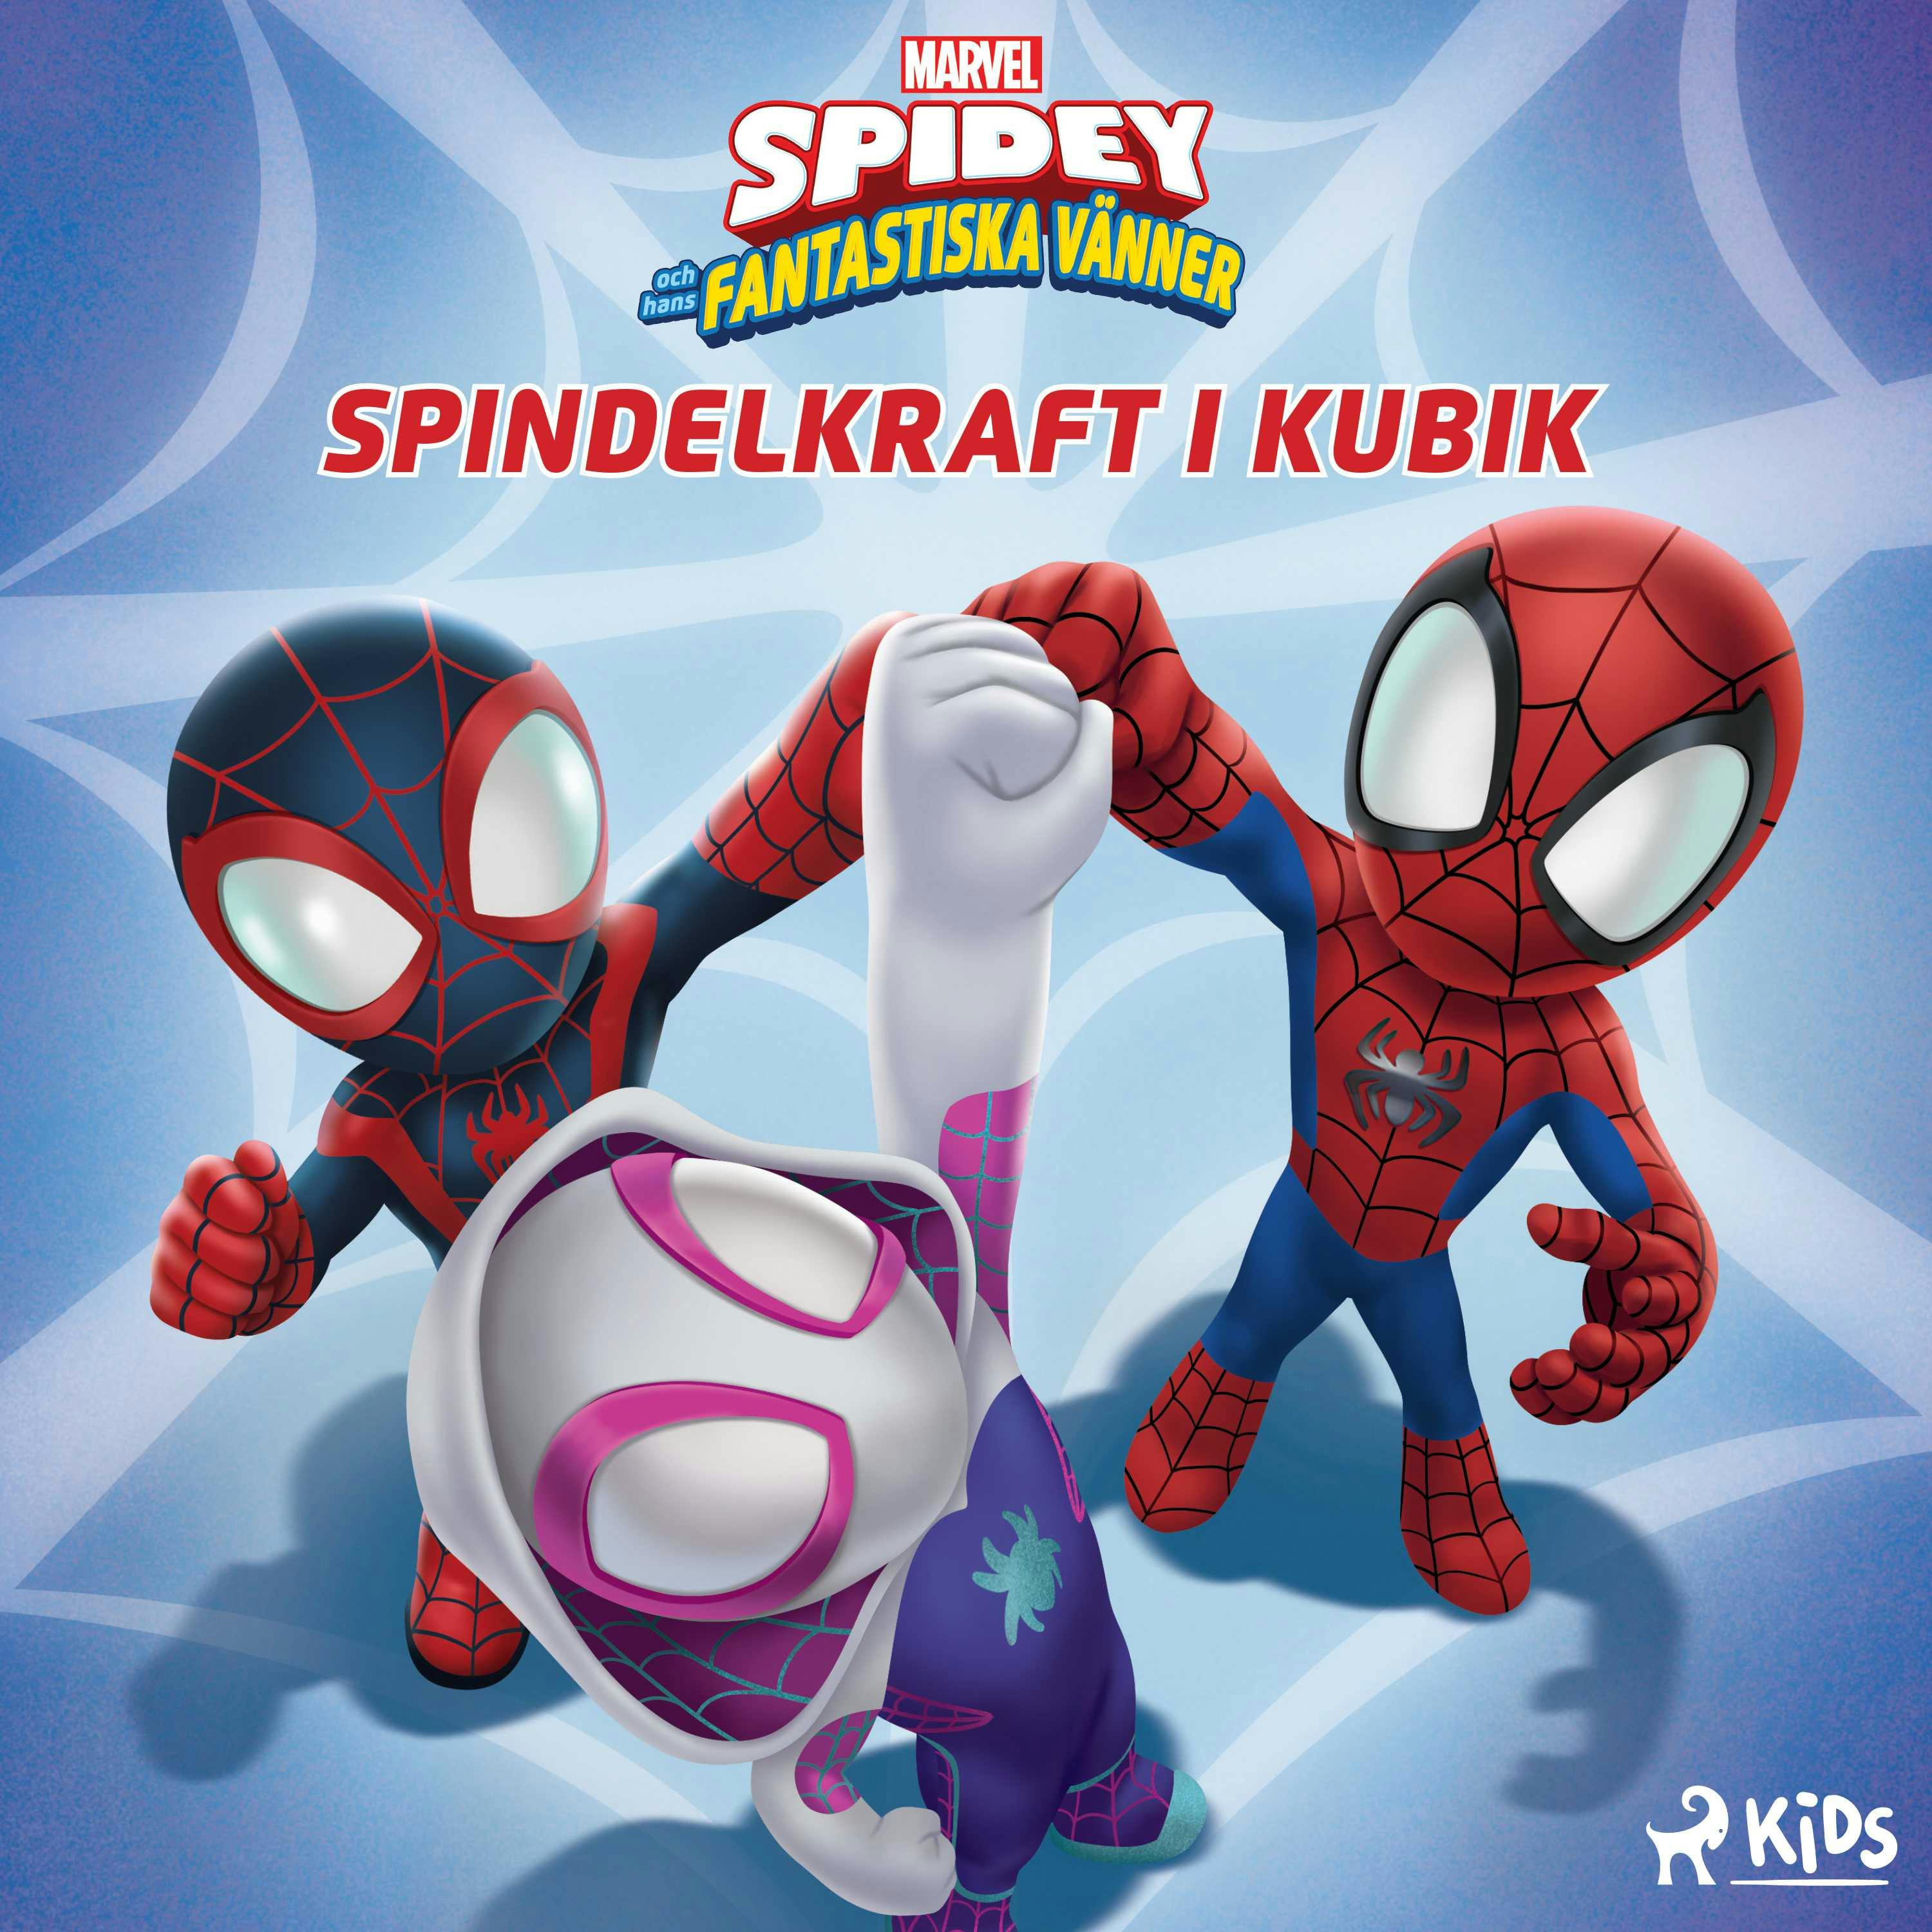 Spidey och hans fantastiska vänner - Spindelkraft i kubik - undefined